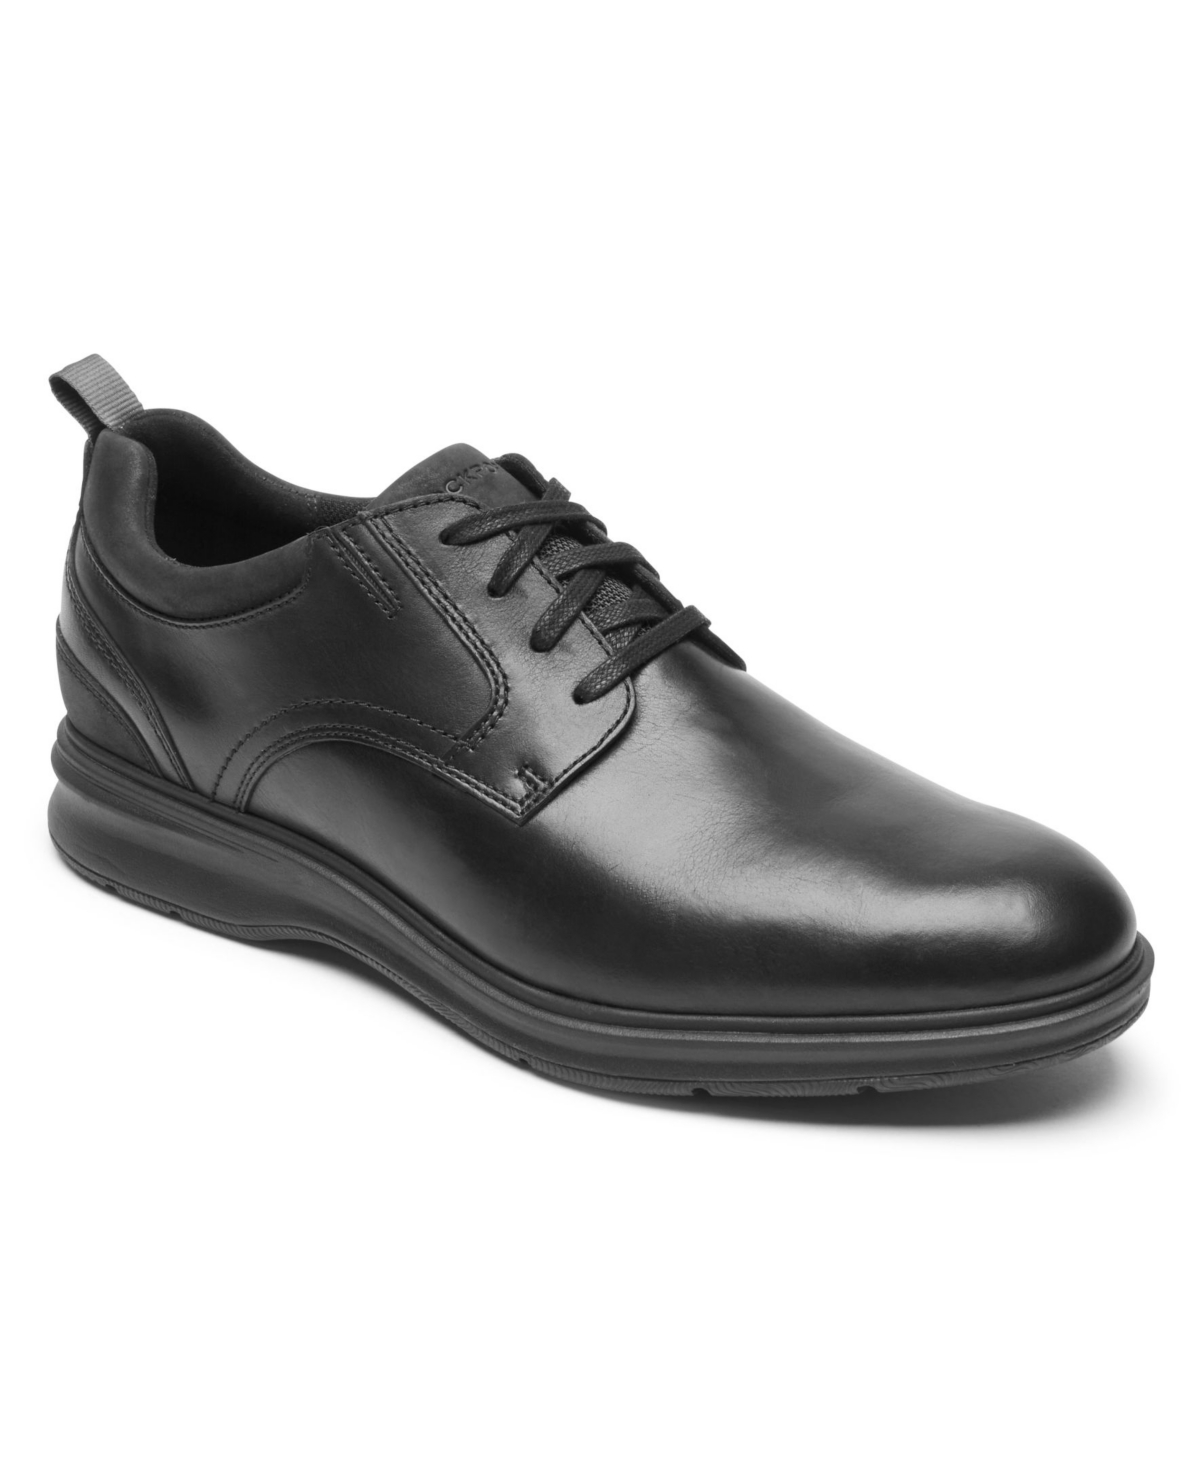 Men's Total Motion City Plain Toe Shoes - Black